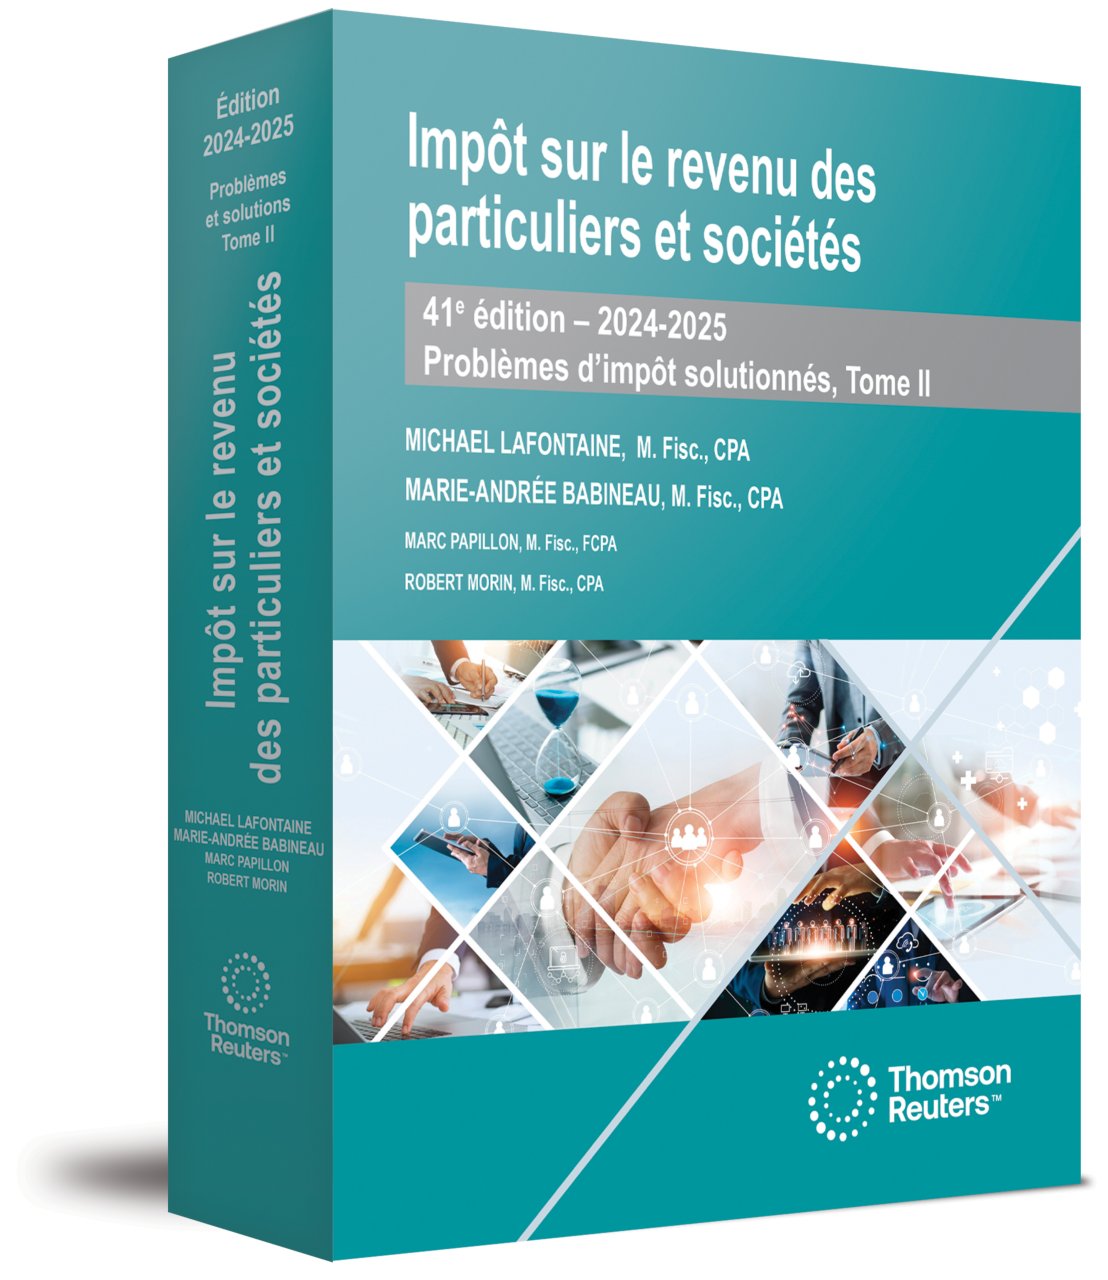 couverture de Impôt sur le revenu des particuliers et sociétés, Problèmes d’impôt solutionnés Tome II, 41e édition, 2024-2025